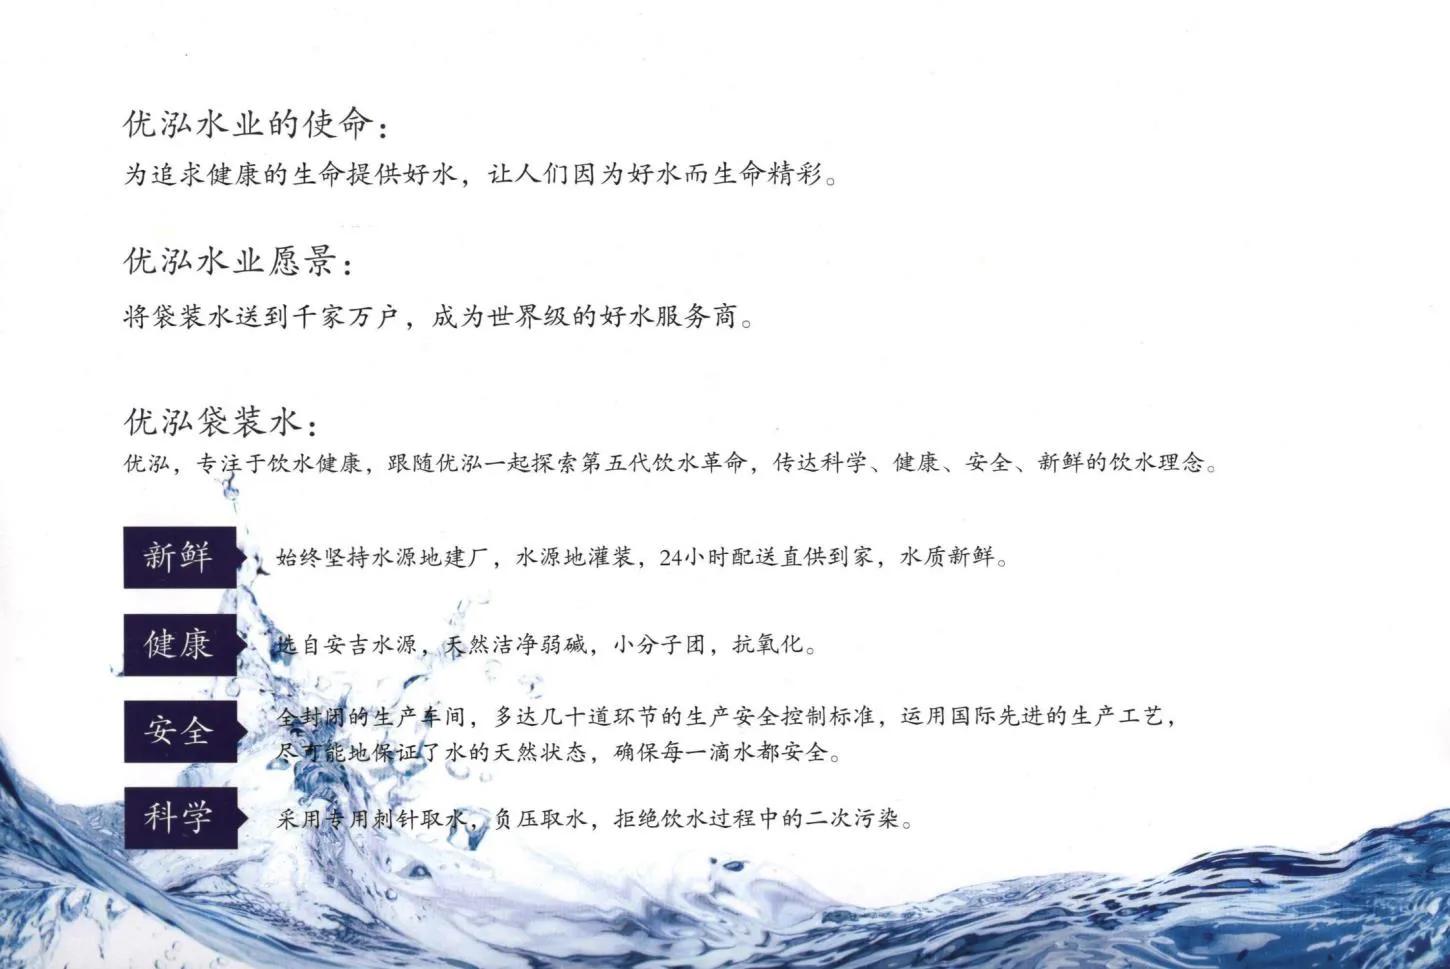 江苏优泓水业—争创饮用水行业品牌的领跑者